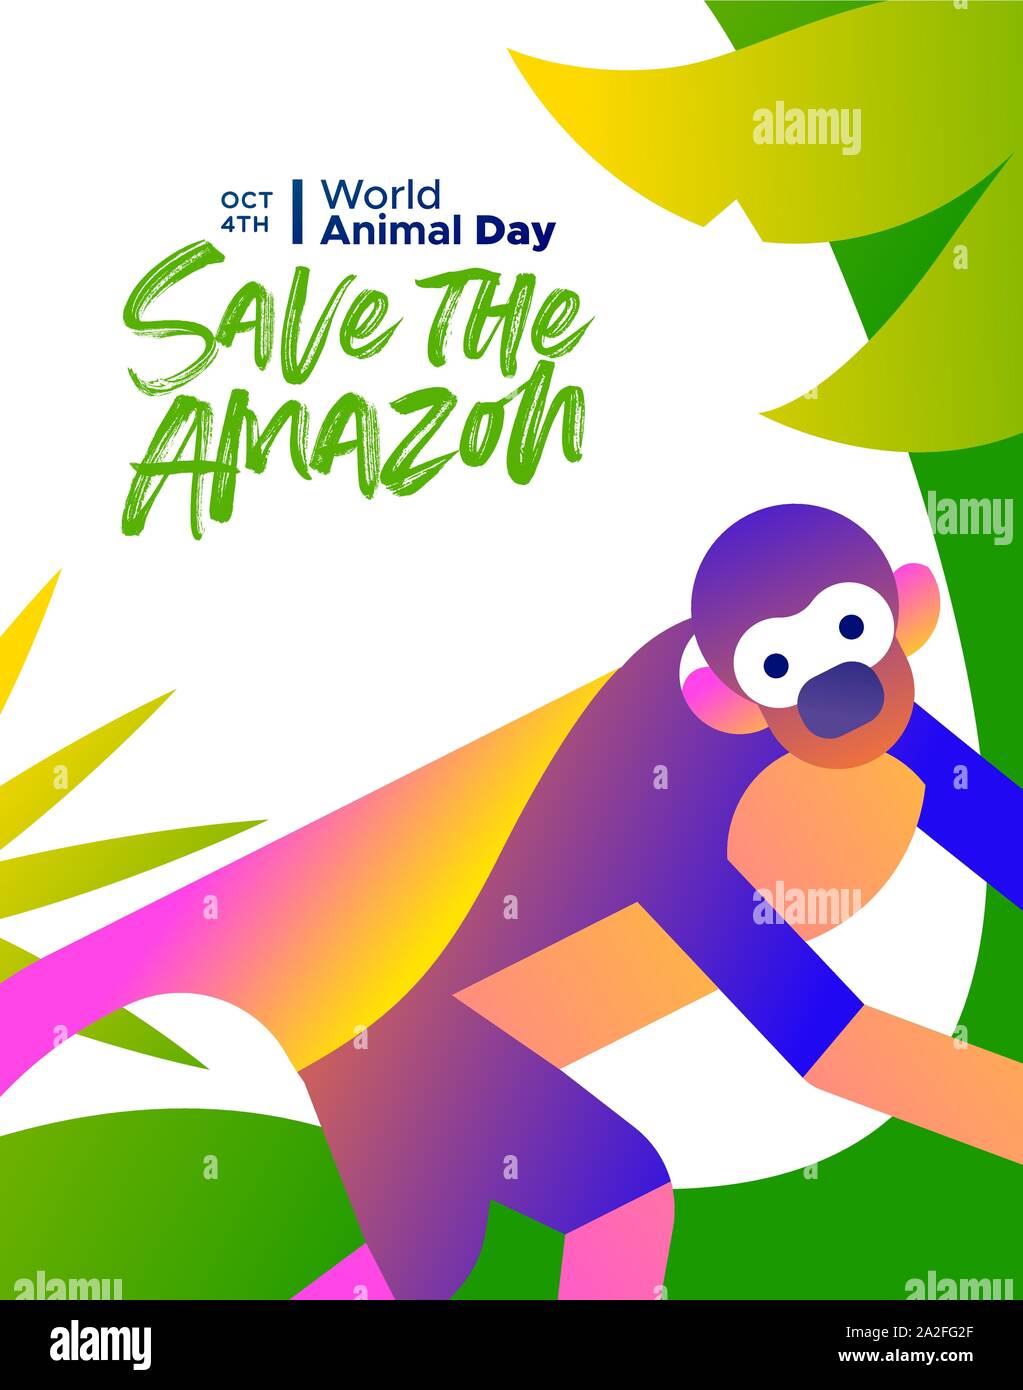 Per salvare l'Amazzonia illustrazione per la Giornata mondiale dell'animale, specie in via di estinzione concetto di conservazione. Foresta pluviale brasiliana Scimmia di scoiattolo in moderno colorato fl Illustrazione Vettoriale